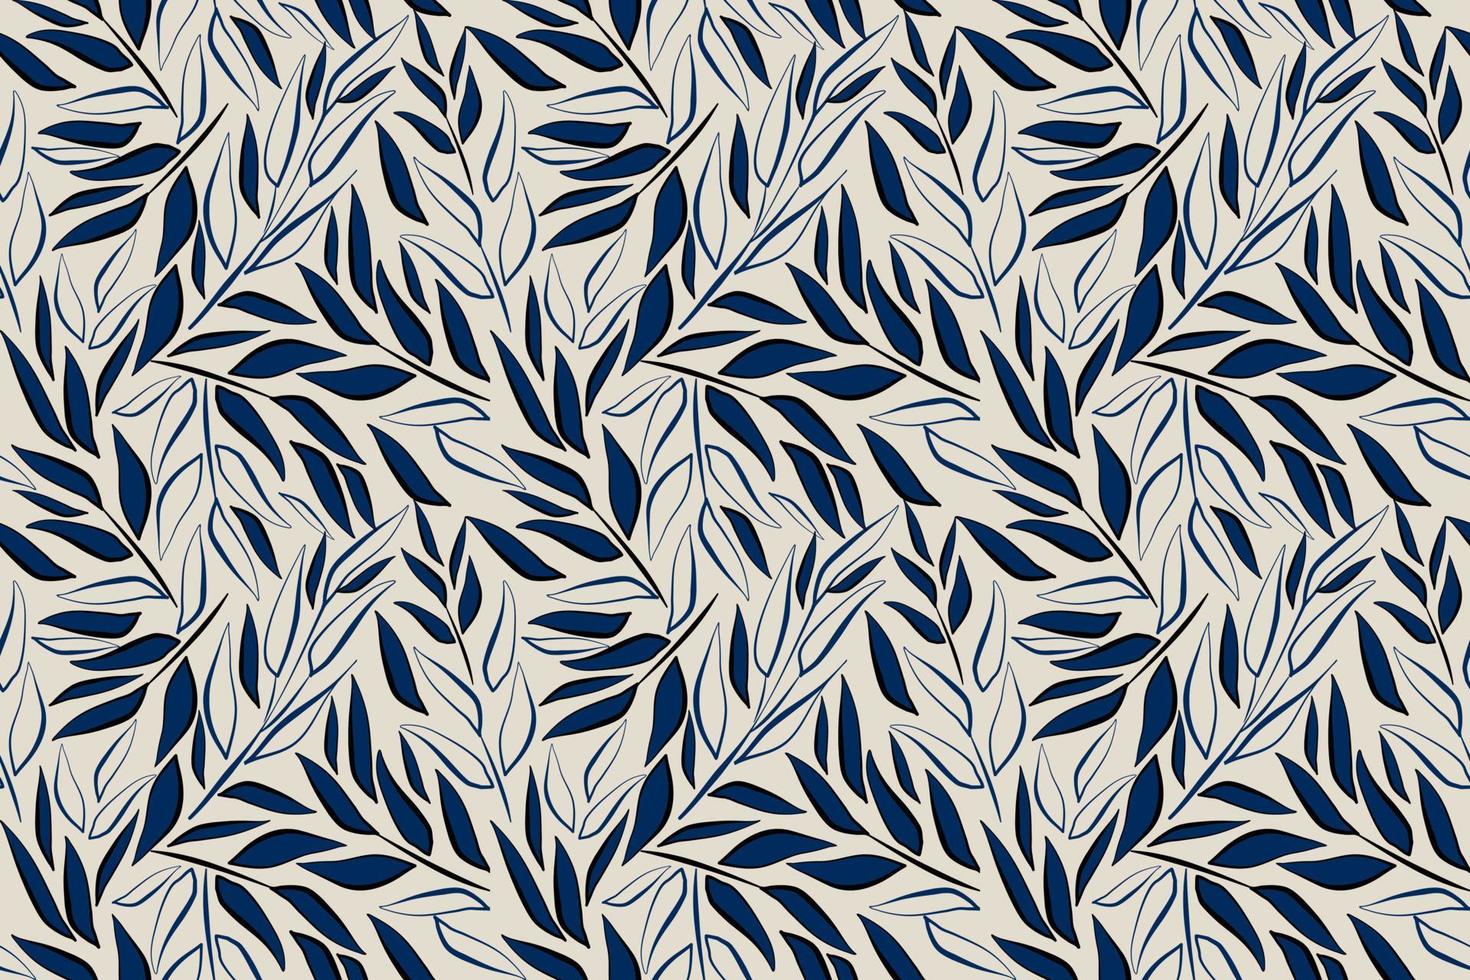 bladeren naadloos patroon blauw achtergrond hand- tekening vector illustratie voor interieur ontwerp behang, kleding stof textiel